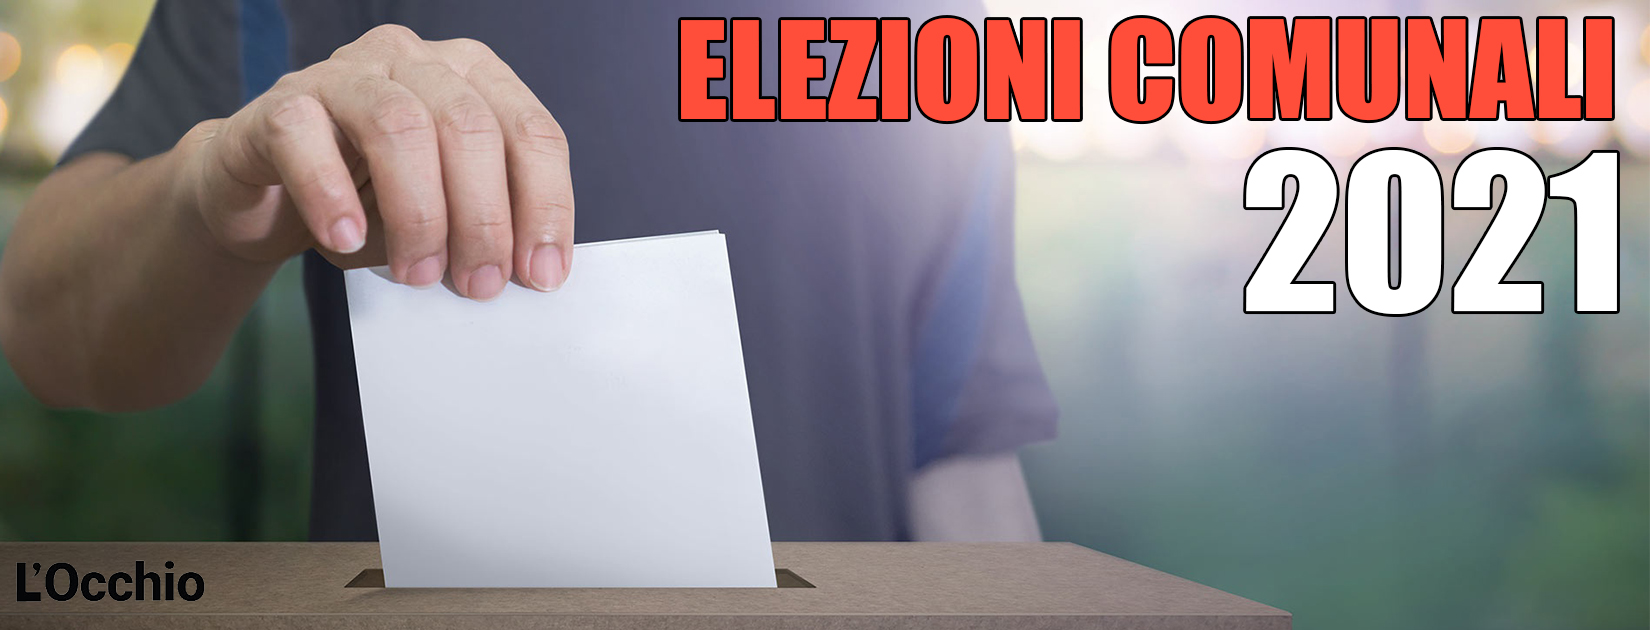 2021_elezioni_comunali